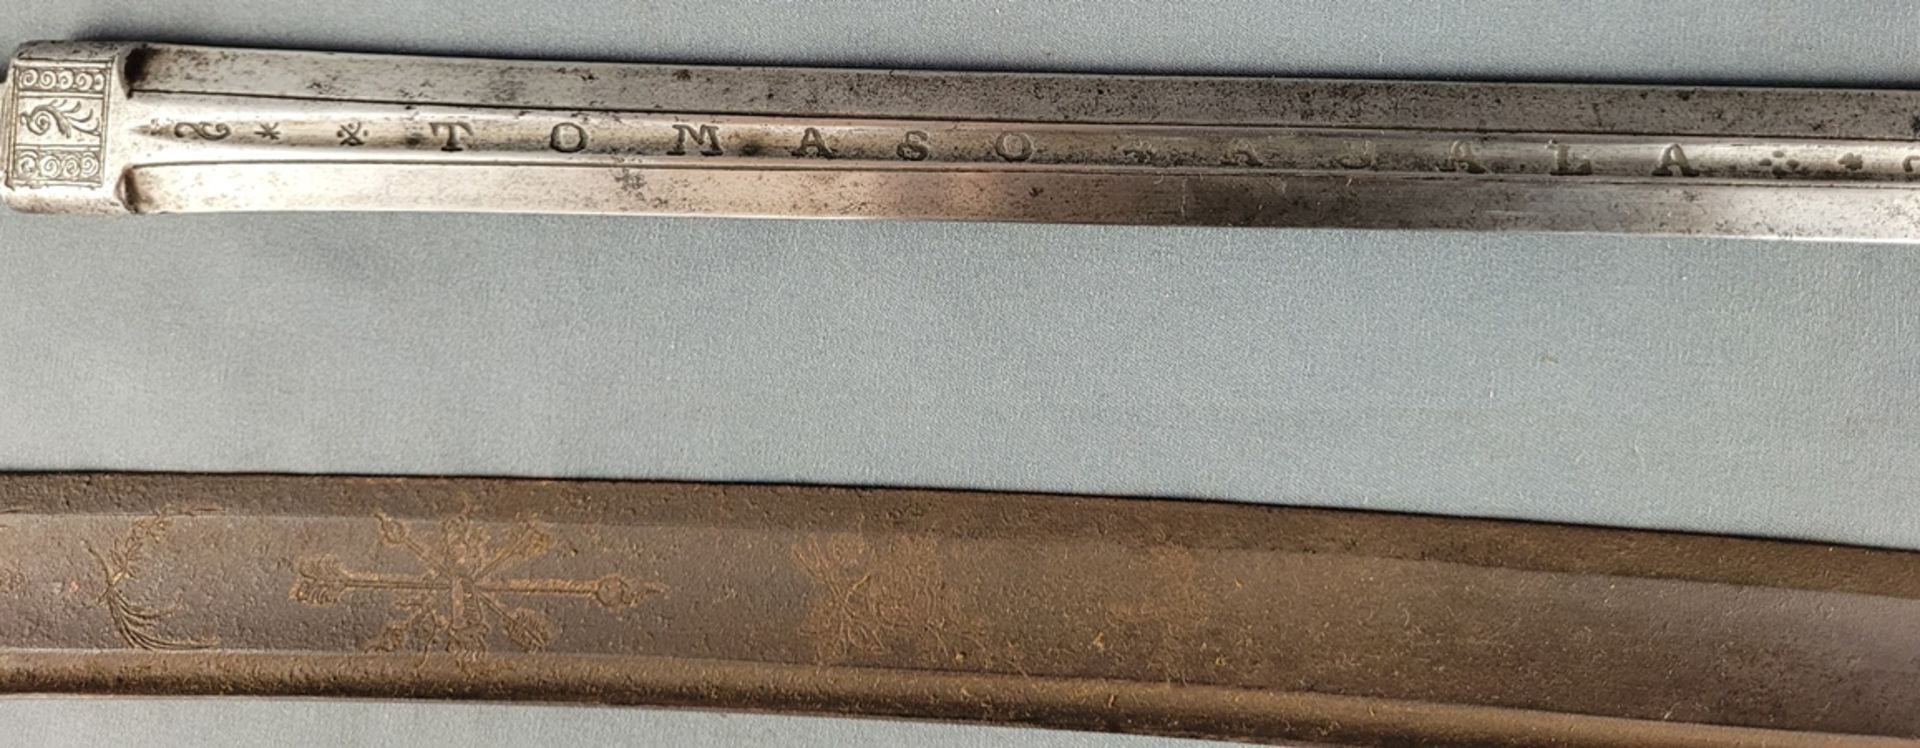 Zwei Schwertklingen, eine geschwungen, einschneidig, ziseliert mit floralem Dekor, L 97 cm, Flugros - Bild 5 aus 5